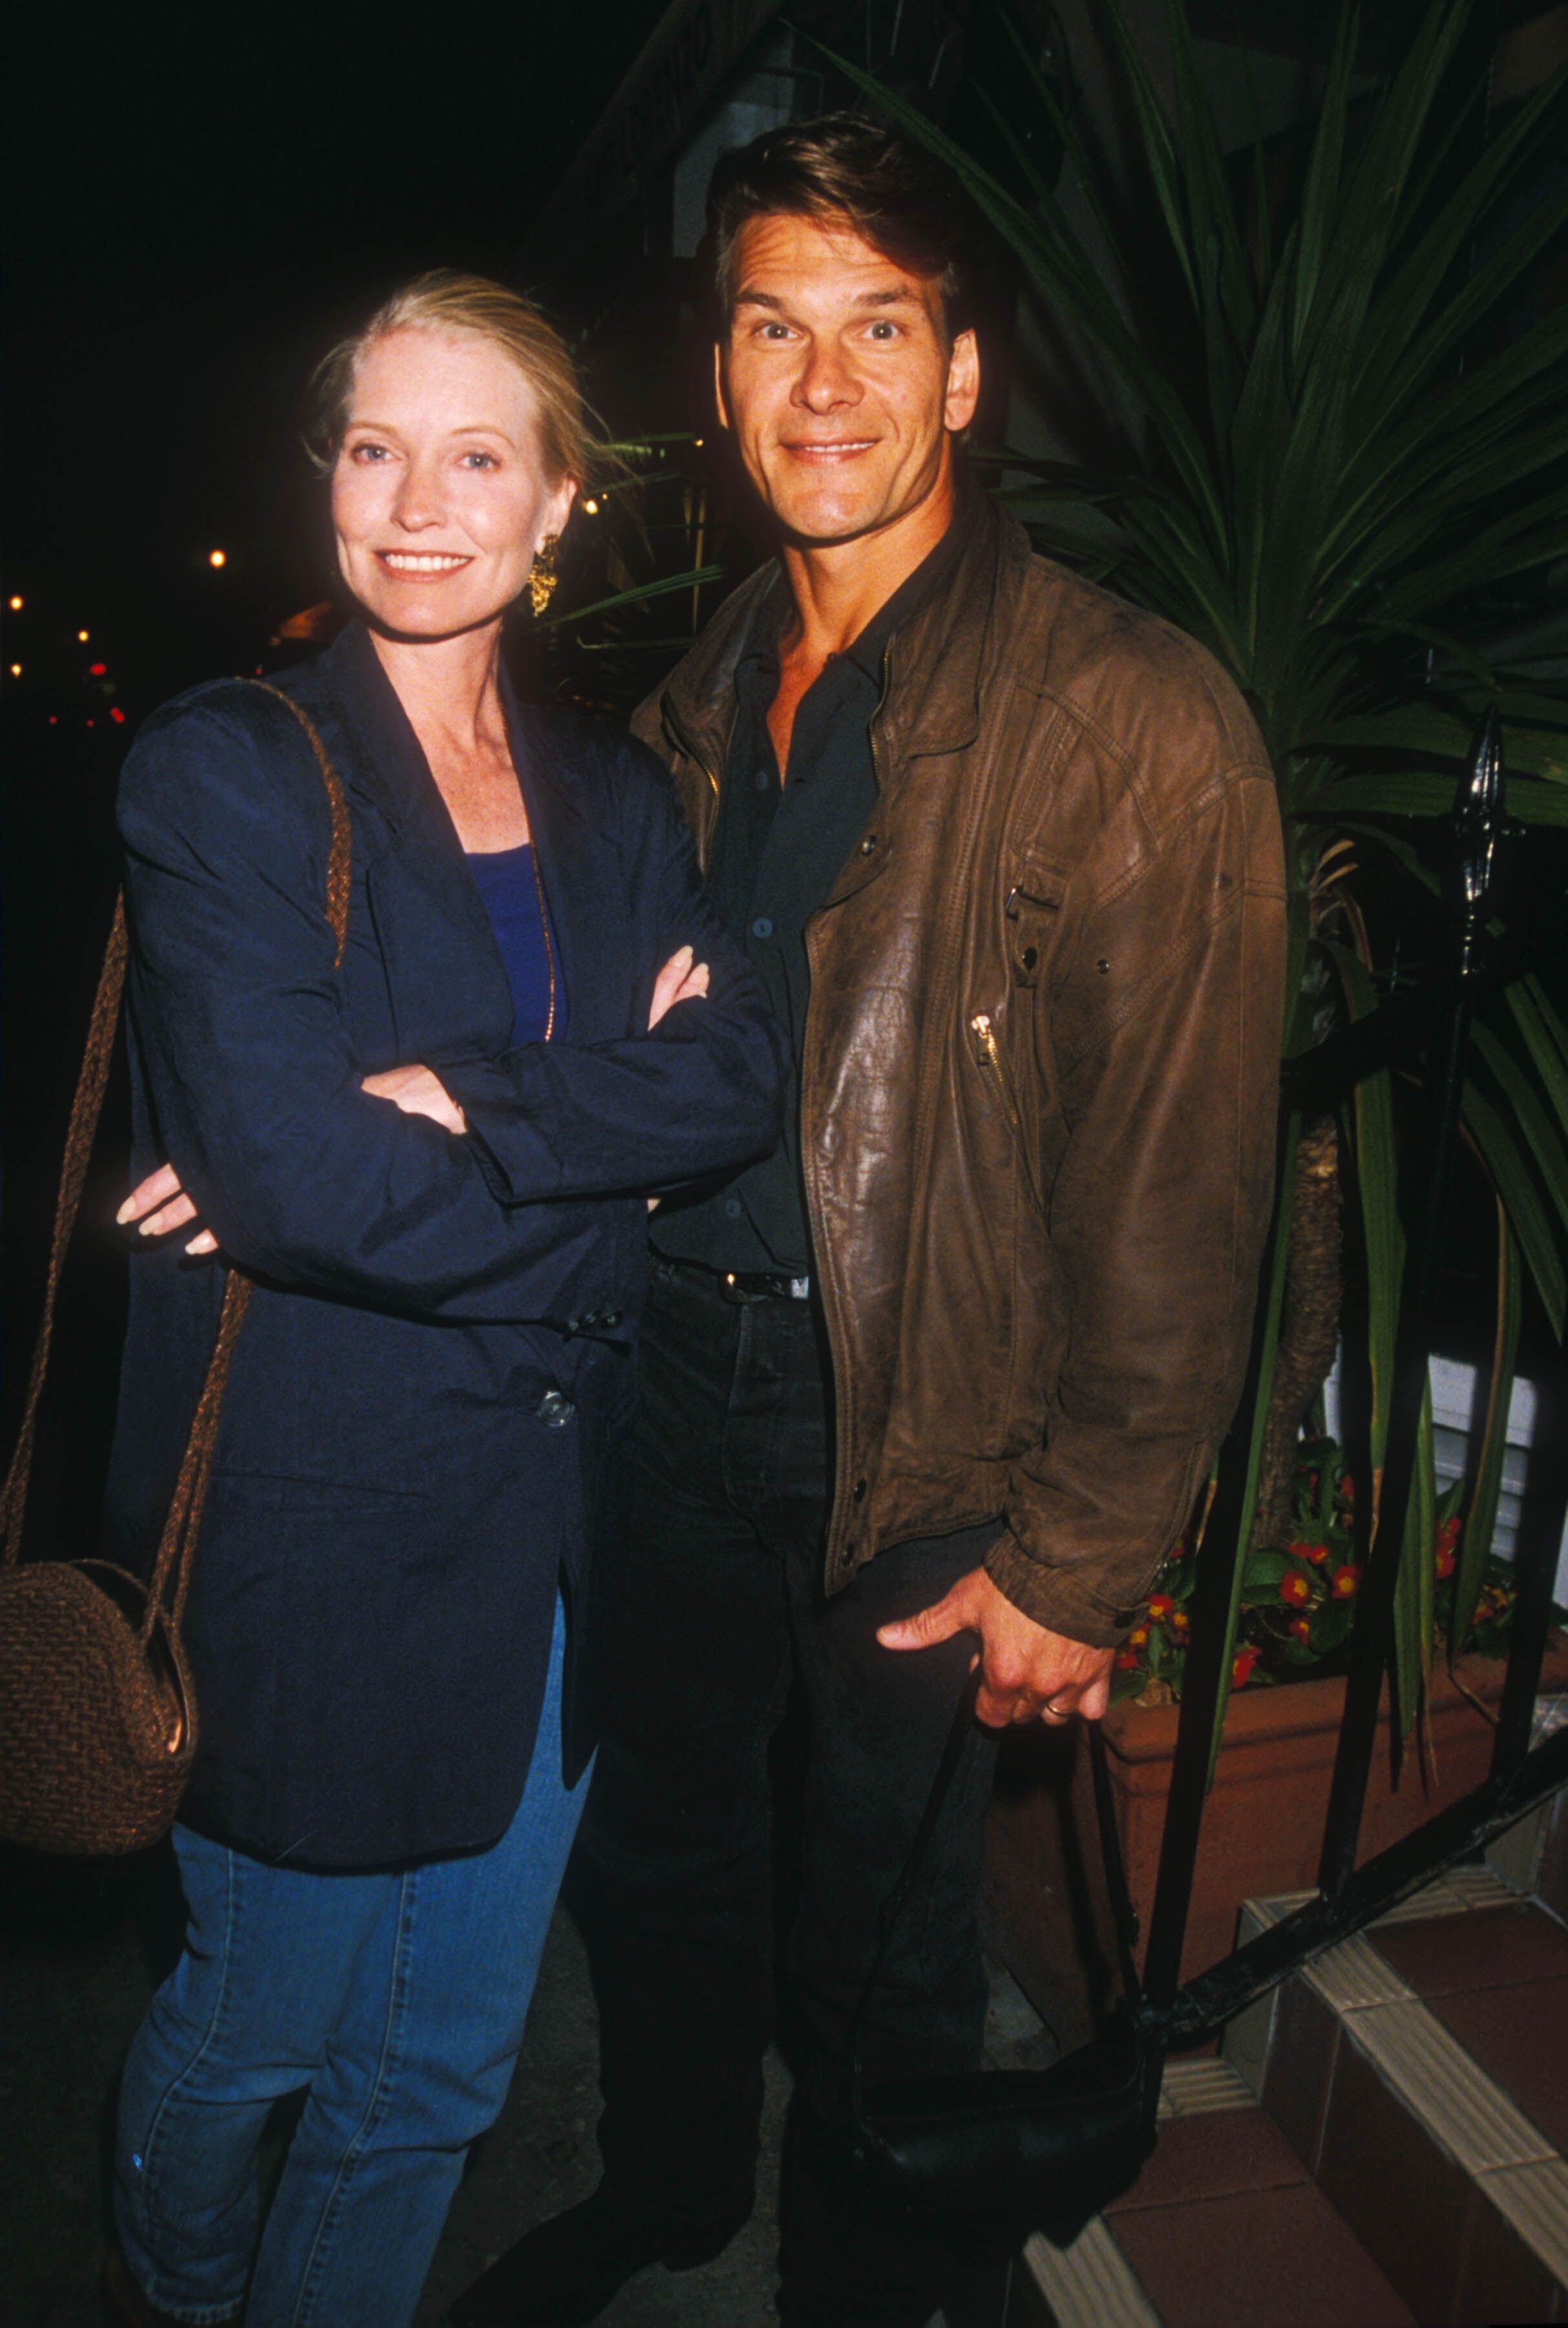 El fallcido Patrick Swayze y su esposa Lisa Niemi salen del restaurante San Lorenzo en la primavera de 1995.